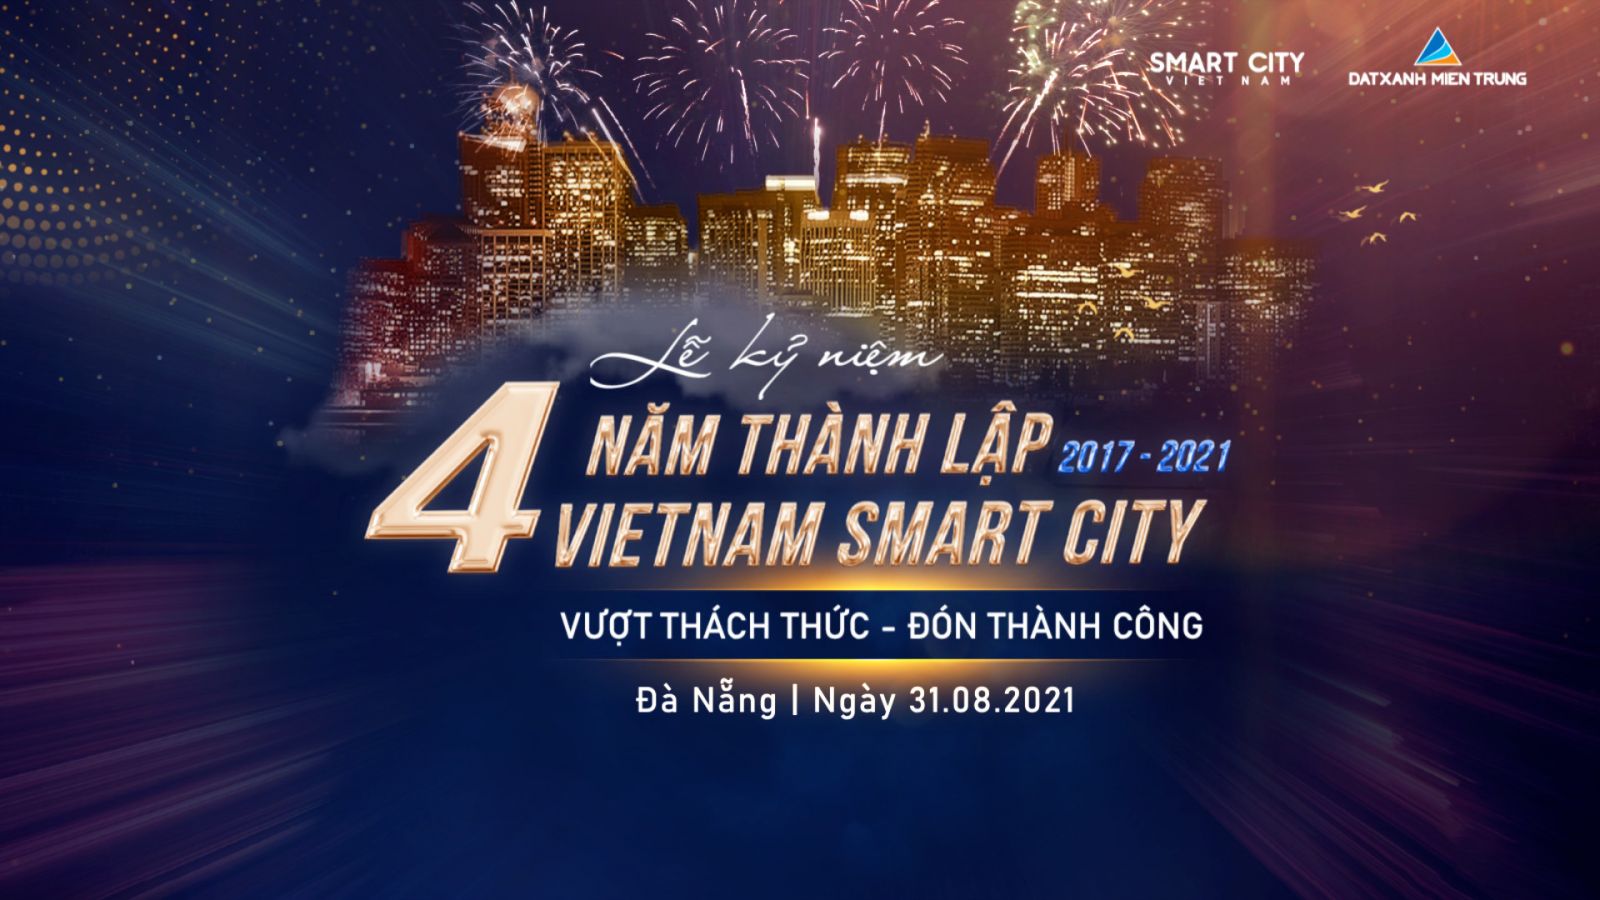 LỄ KỶ NIỆM BỐN NĂM THÀNH LẬP VN SMART CITY - Viet Nam Smart City